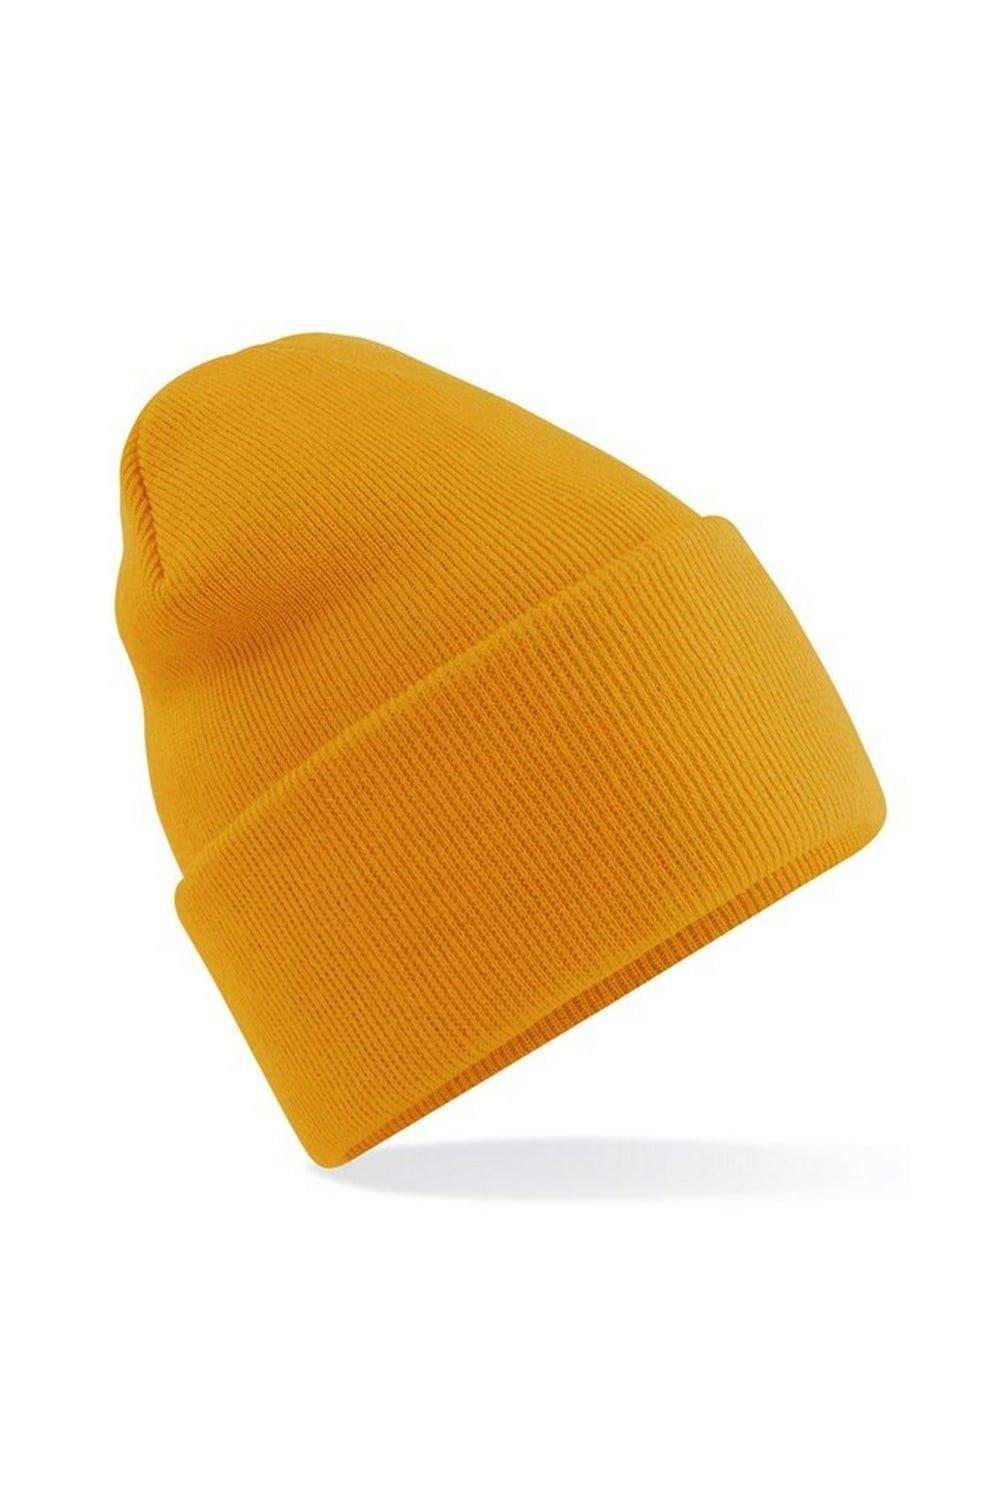 Оригинальная шапка-бини с отвернутыми манжетами Beechfield, желтый оригинальная зимняя шапка бини с манжетами beechfield красный